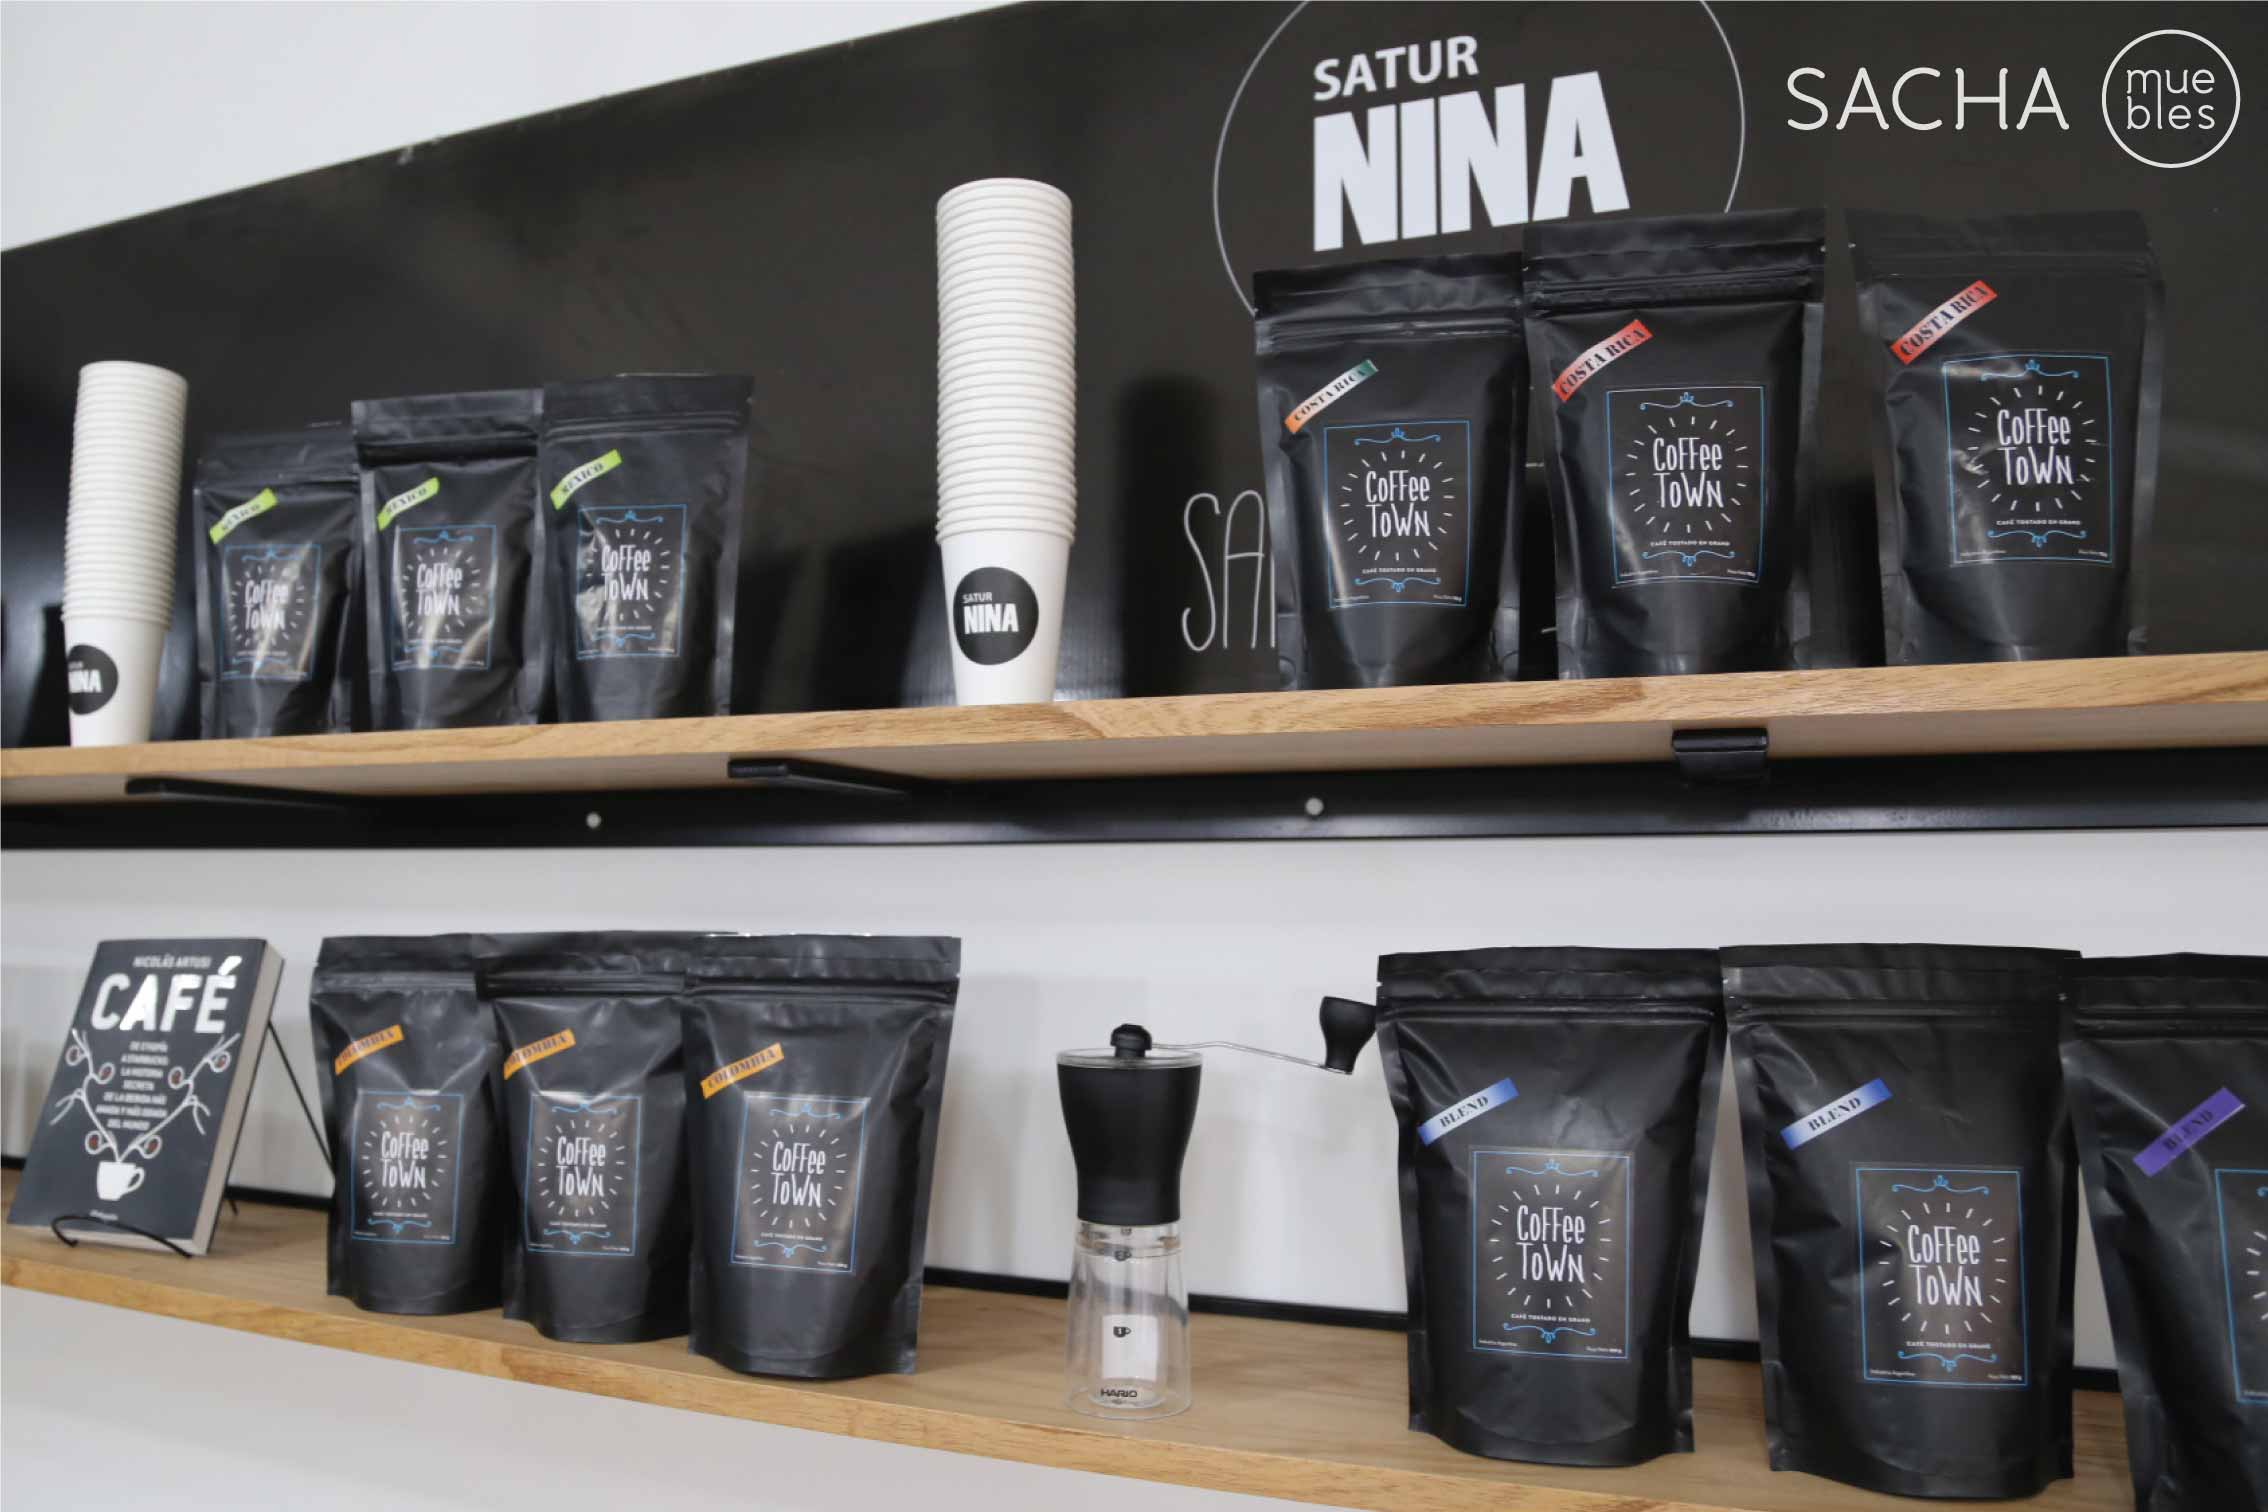 Idea, diseño y amoblamiento Proyecto Saturnina.
Saturnina Coffee. San Martín 989, CABA. https://www.facebook.com/Saturninacoffee